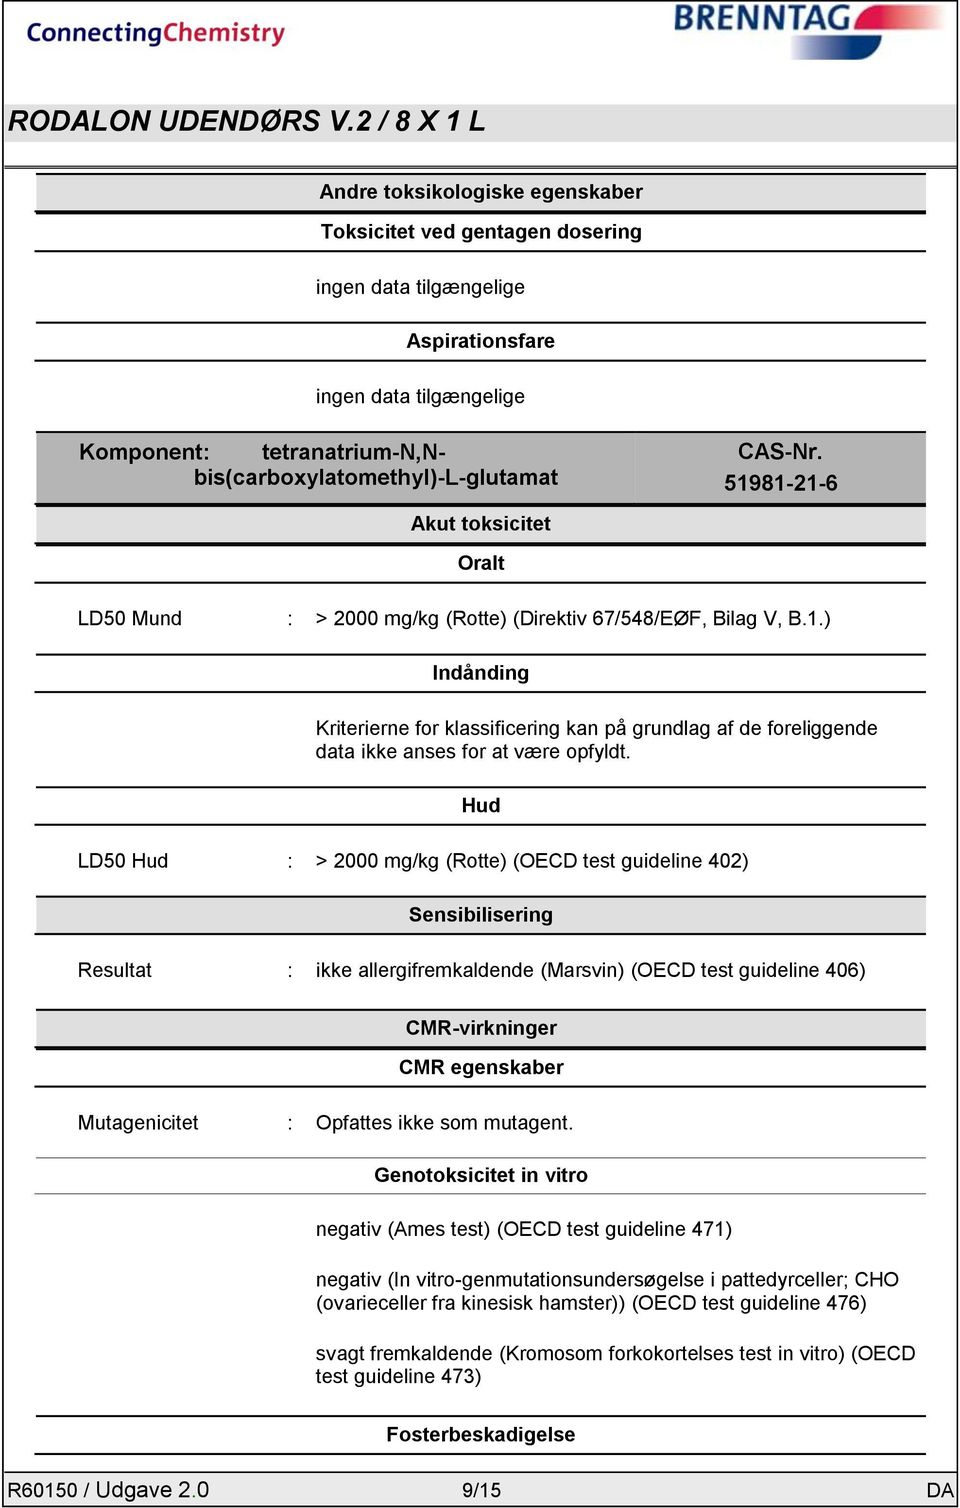 Hud LD50 Hud : > 2000 mg/kg (Rotte) (OECD test guideline 402) Sensibilisering Resultat : ikke allergifremkaldende (Marsvin) (OECD test guideline 406) CMR-virkninger CMR egenskaber Mutagenicitet :